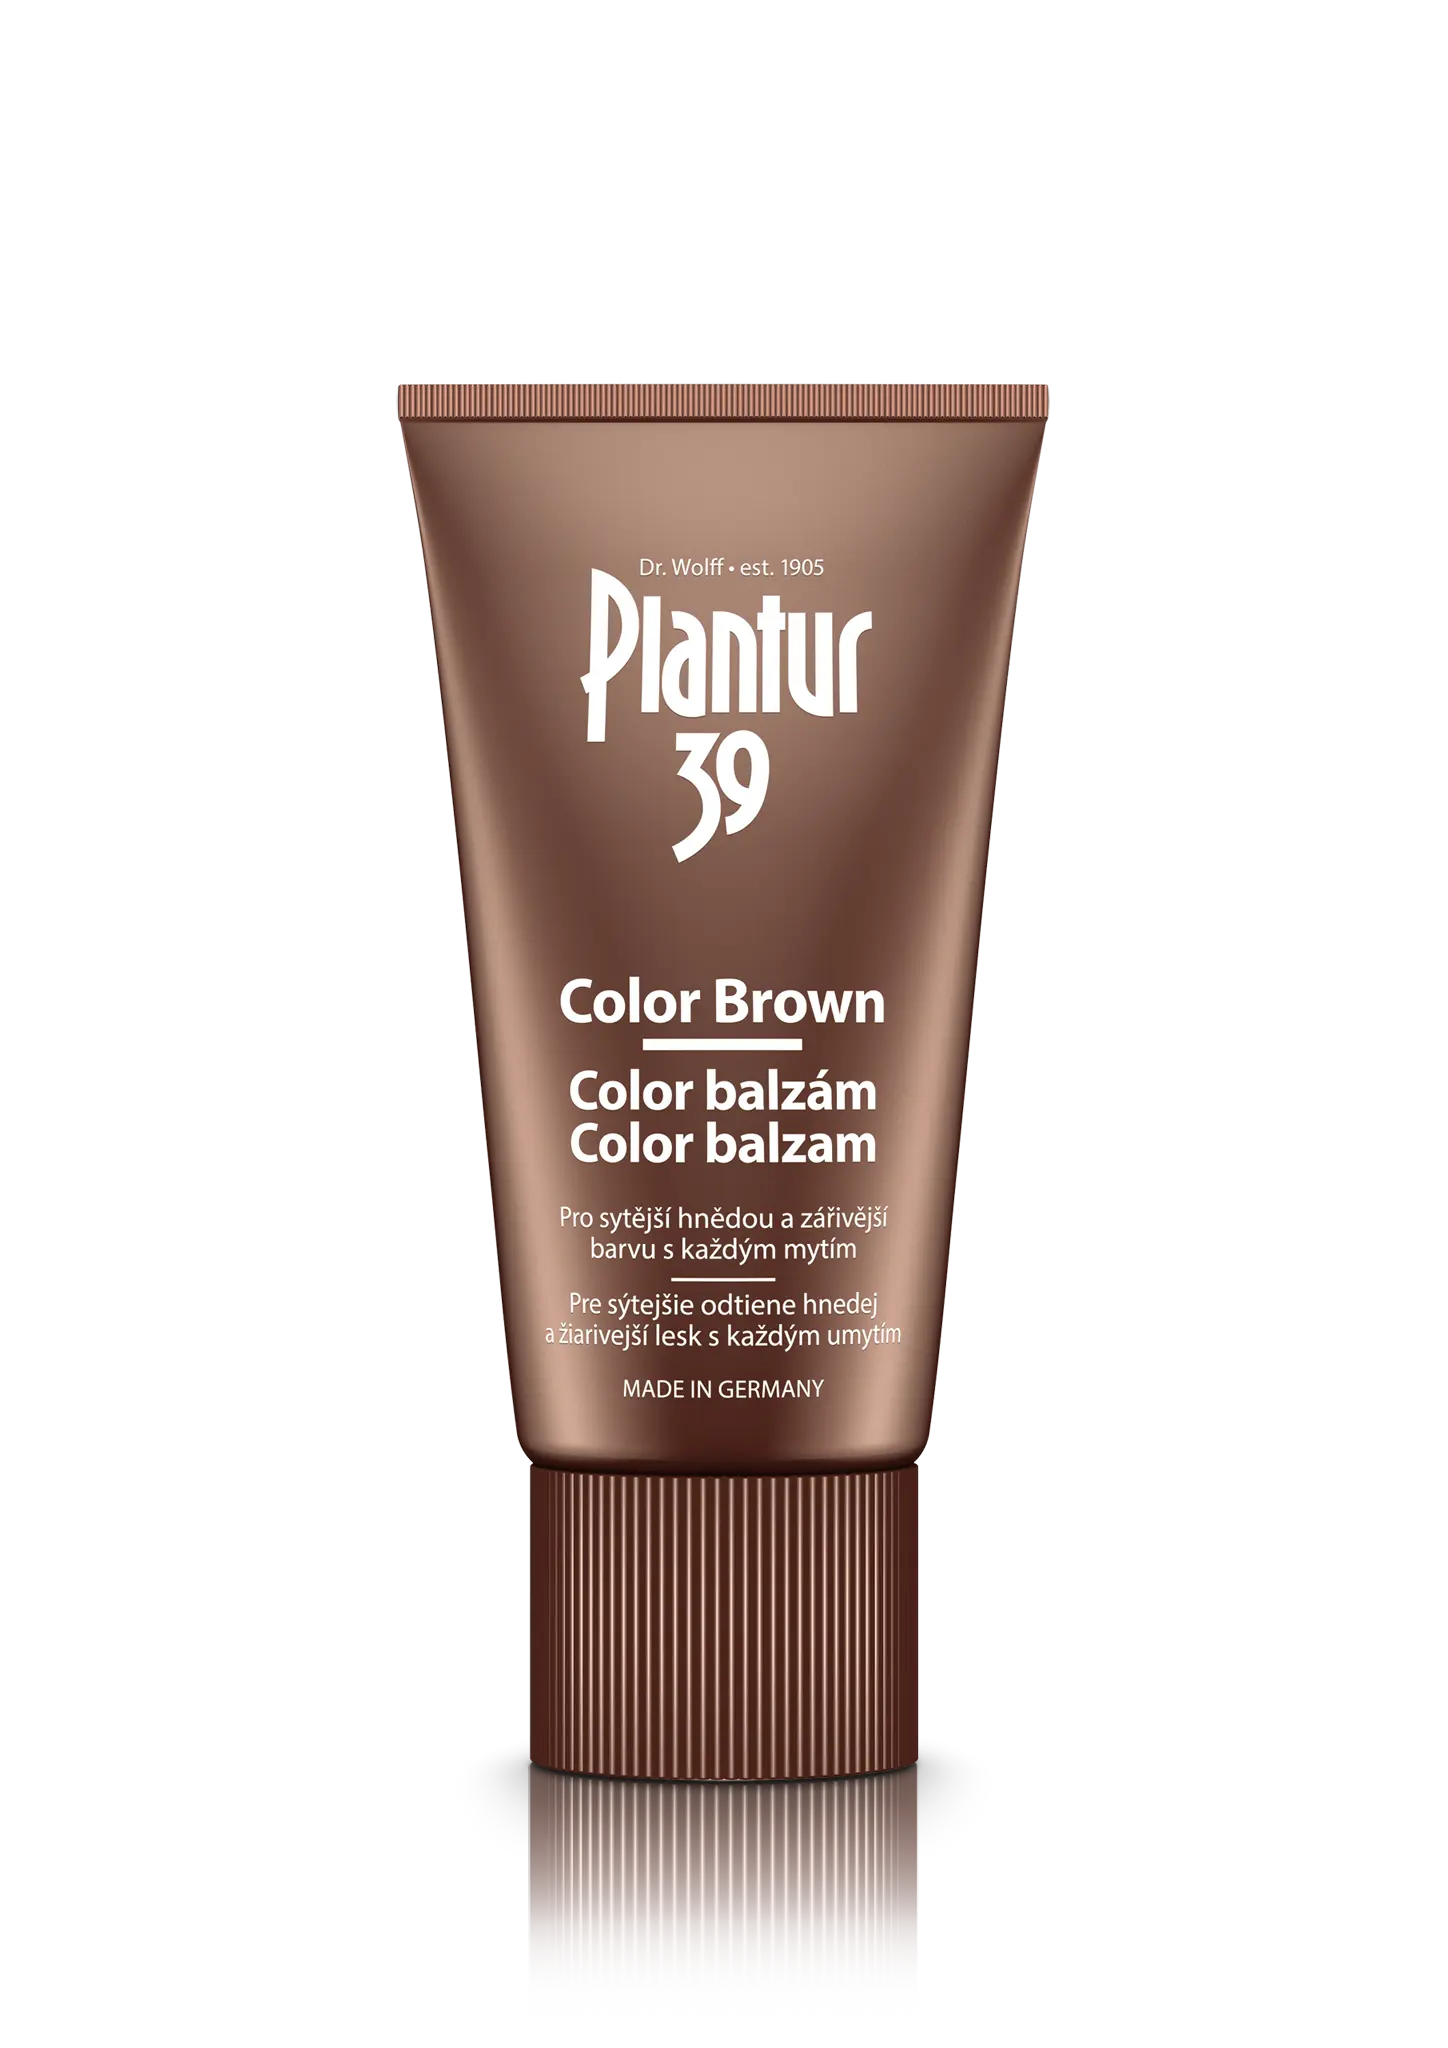 Plantur 39 Color Braun kondicionér 150 ml